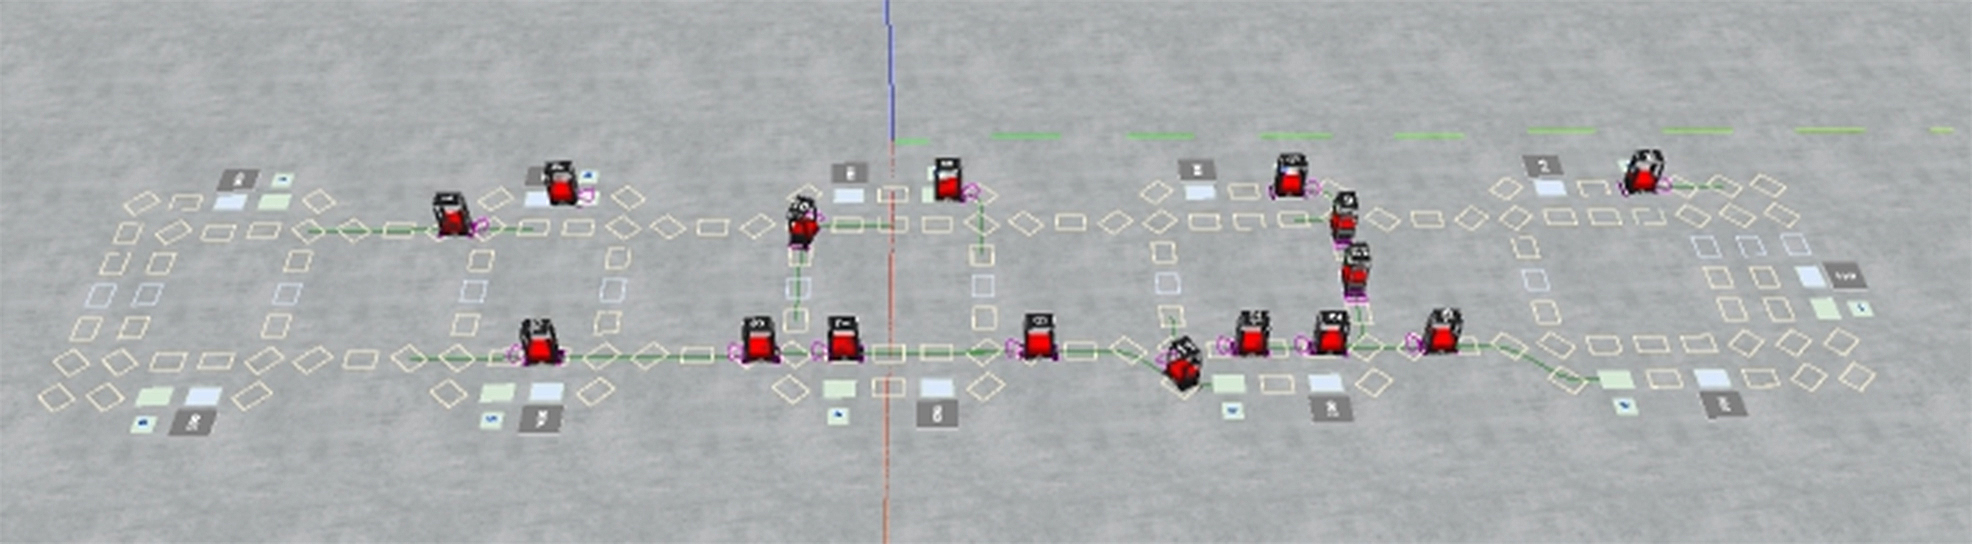 Eine Simulation der Robotersortierflotte von Prime Vision